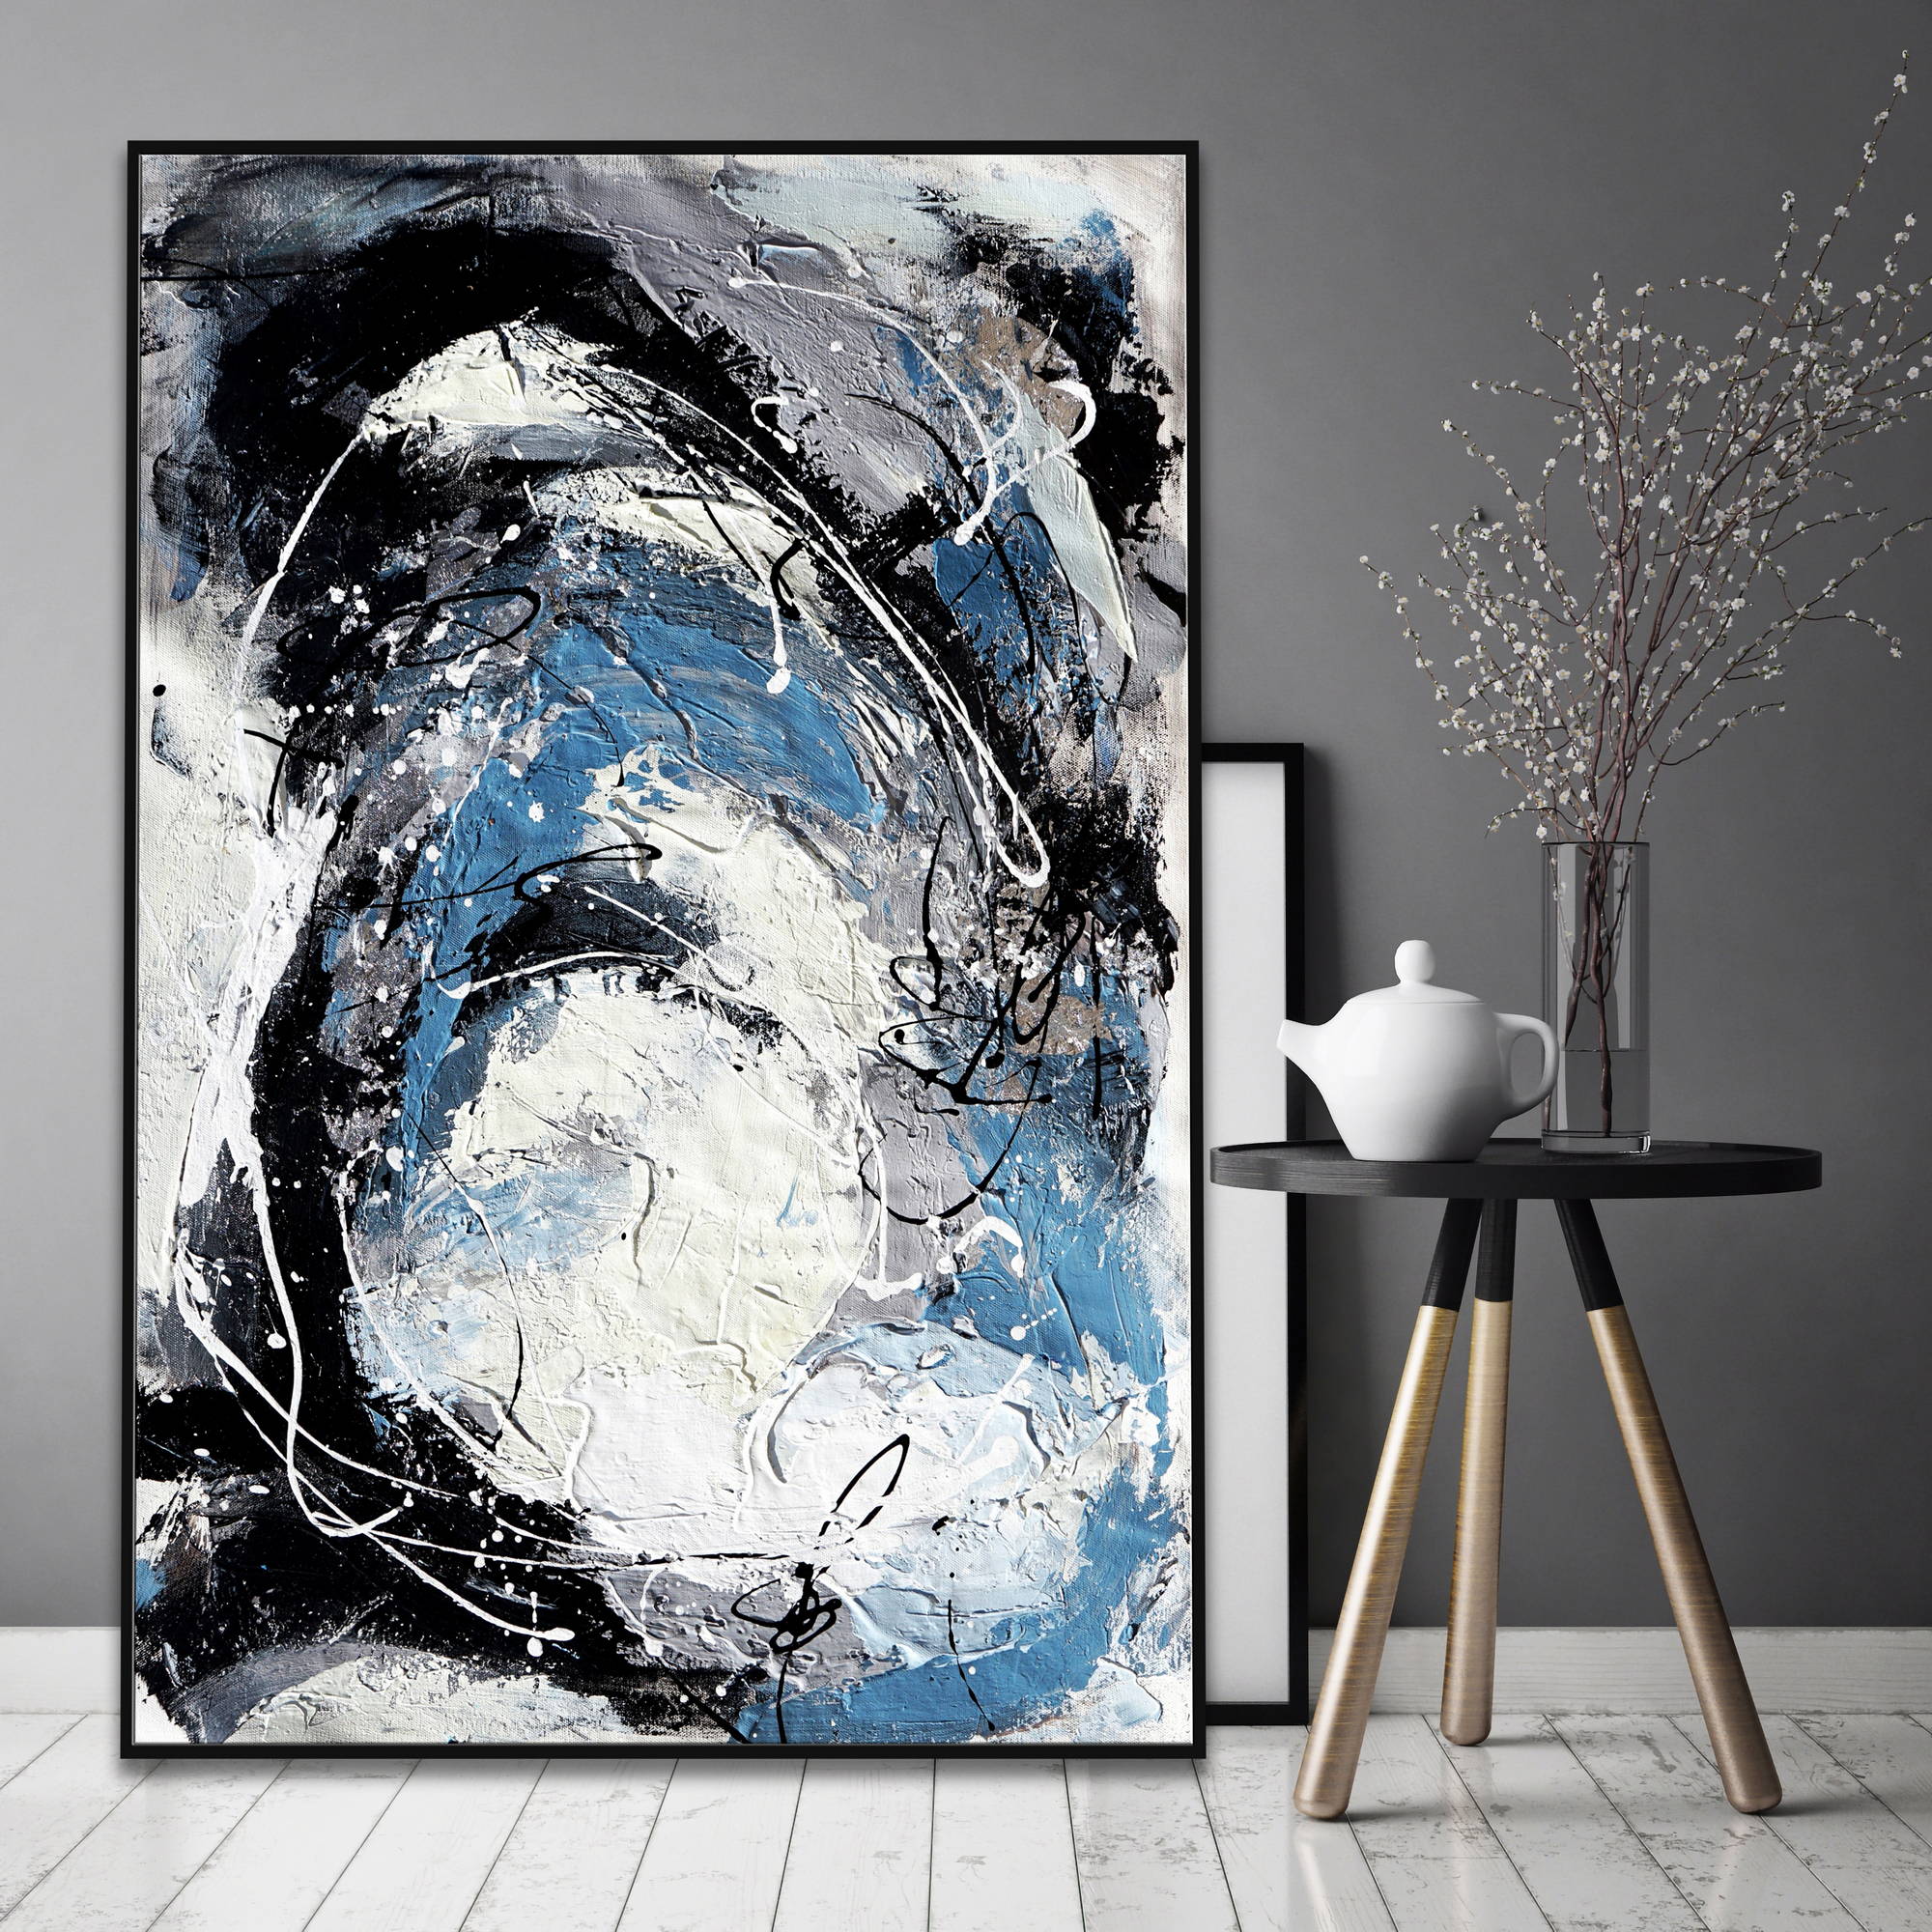 Dipinto astratto con forme intrecciate e texture spesse in bianco, nero e blu